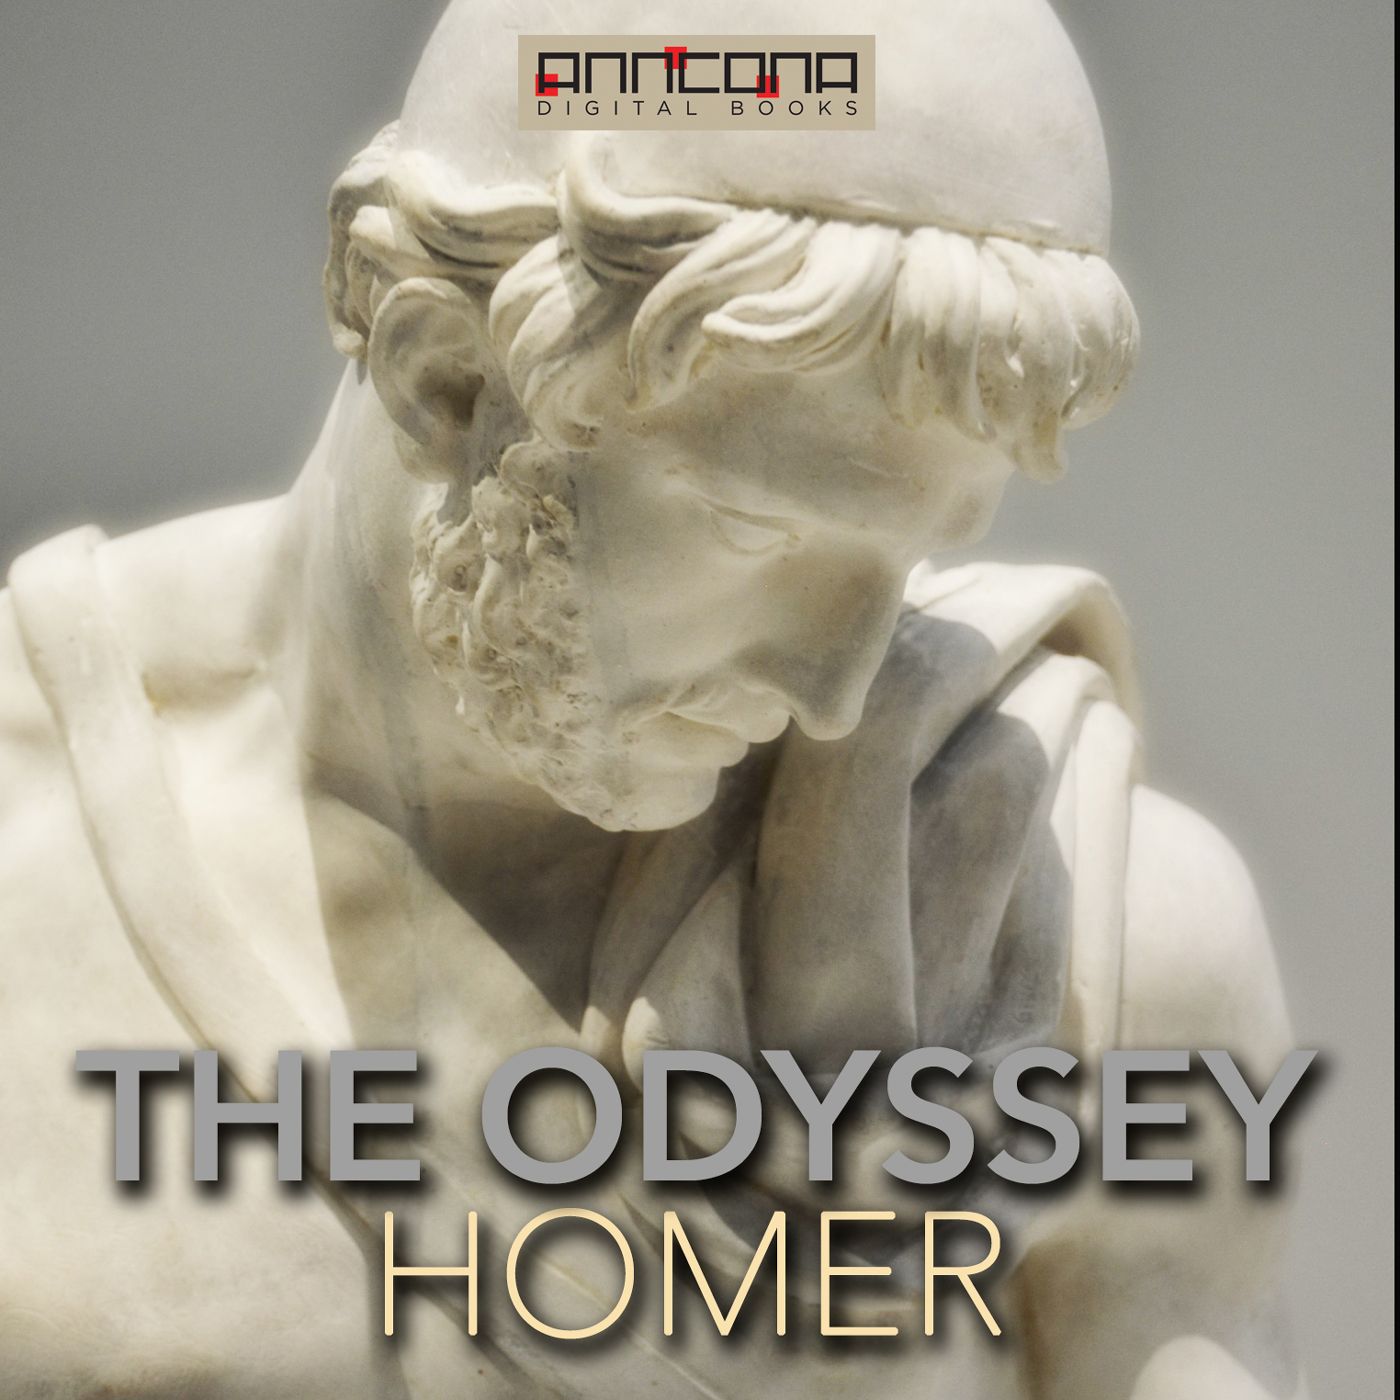 The Odyssey, Samuel Butler translation, lydbog af Homer